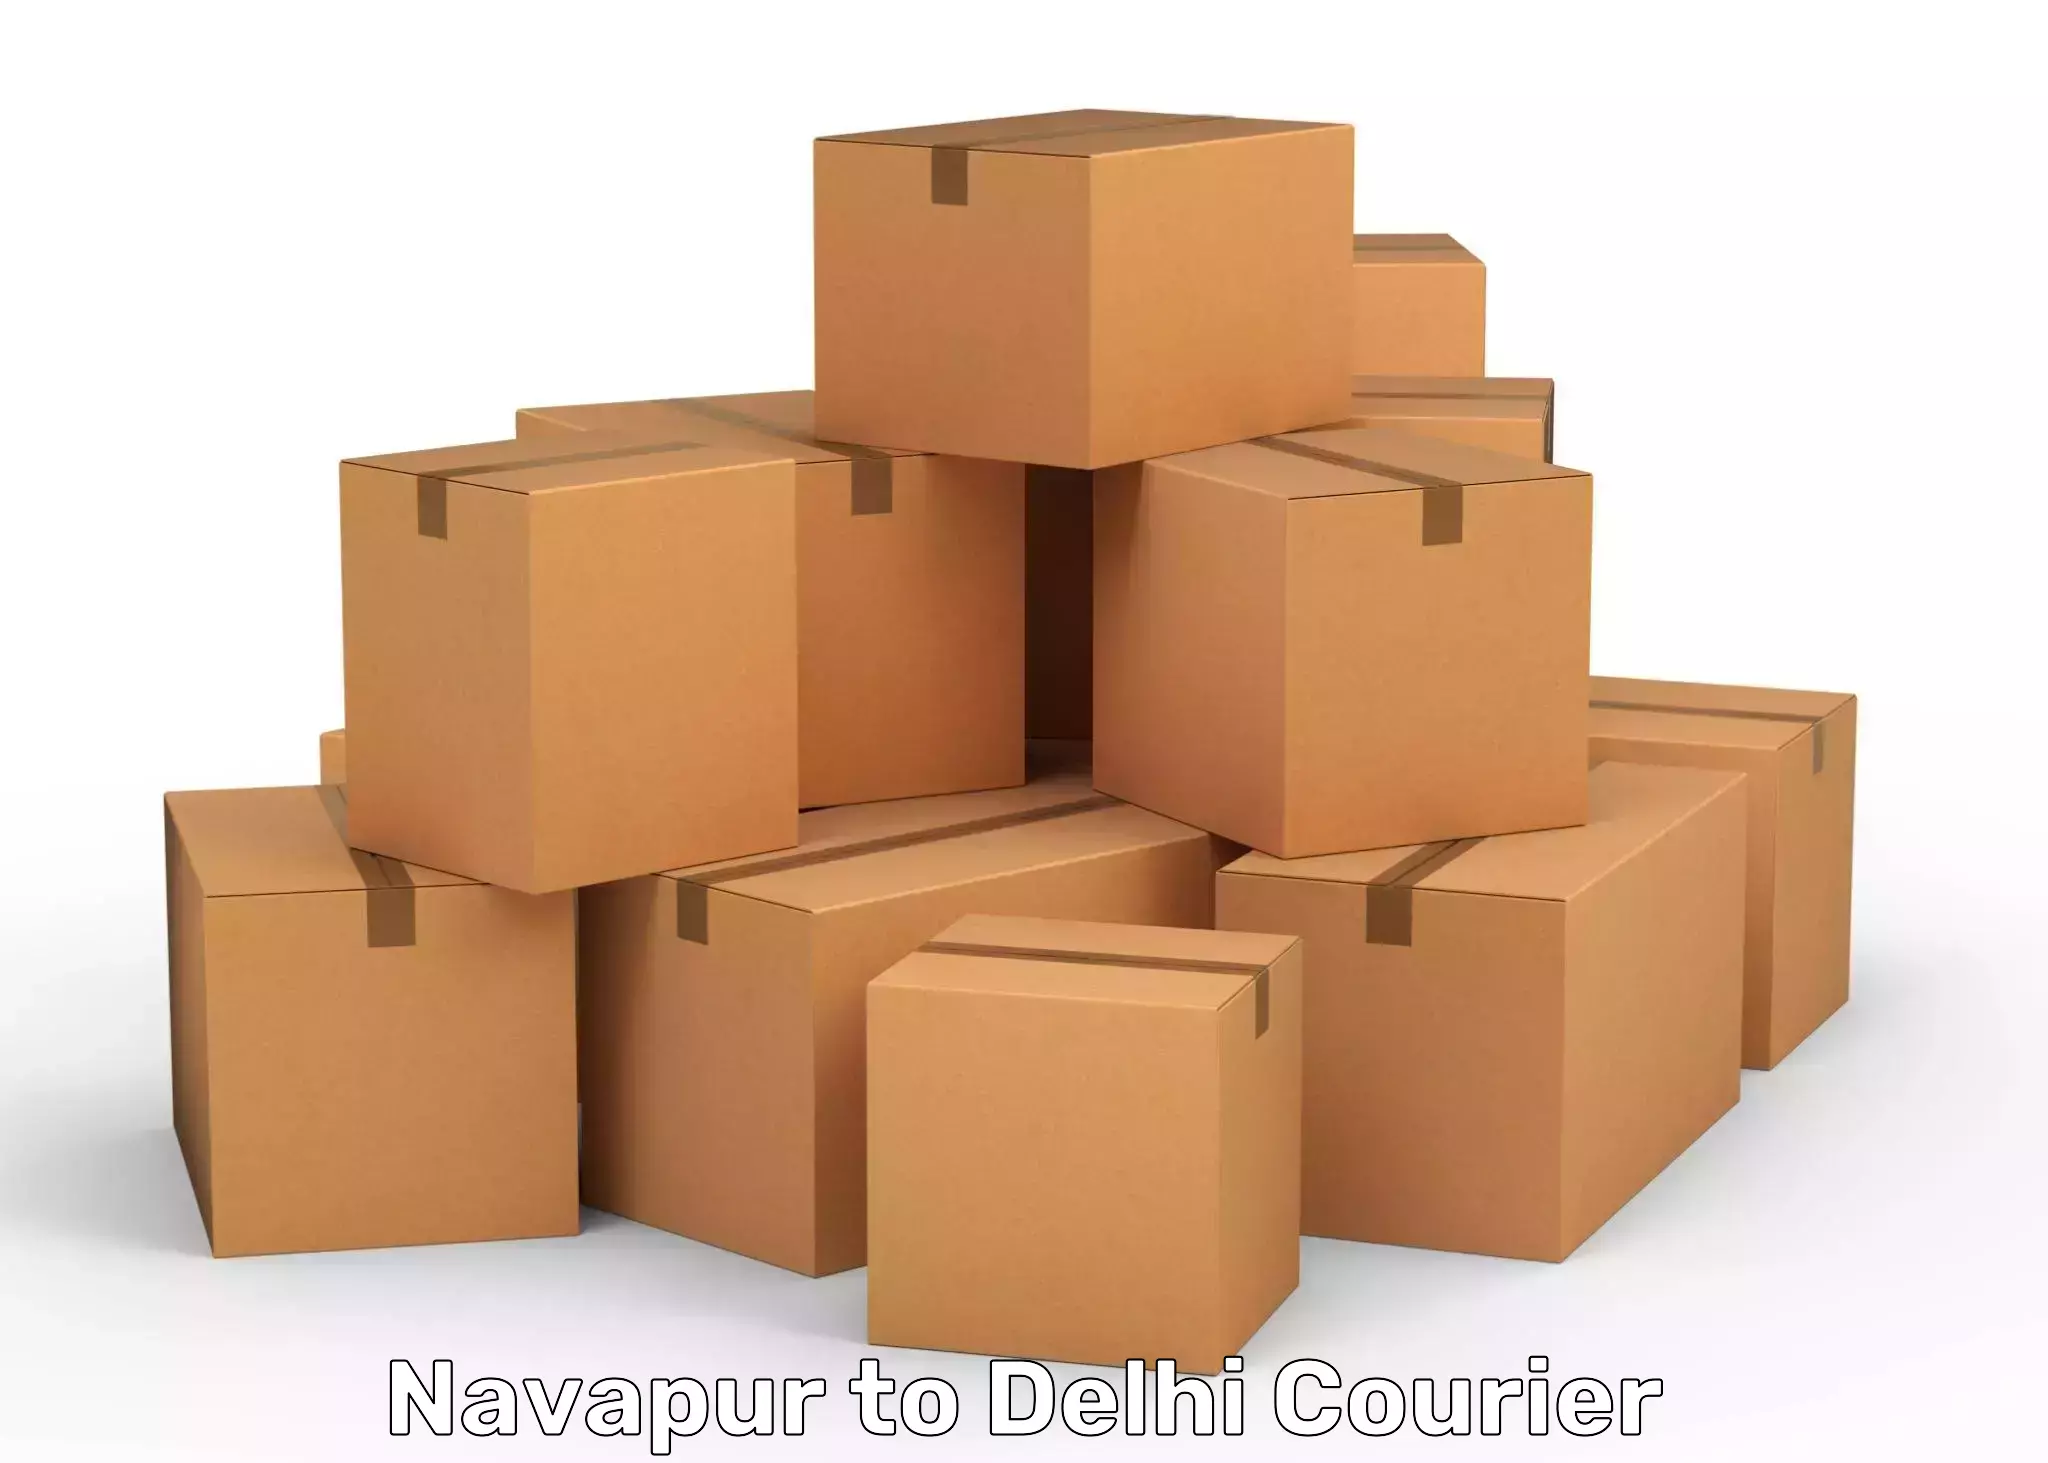 Modern courier technology in Navapur to Delhi